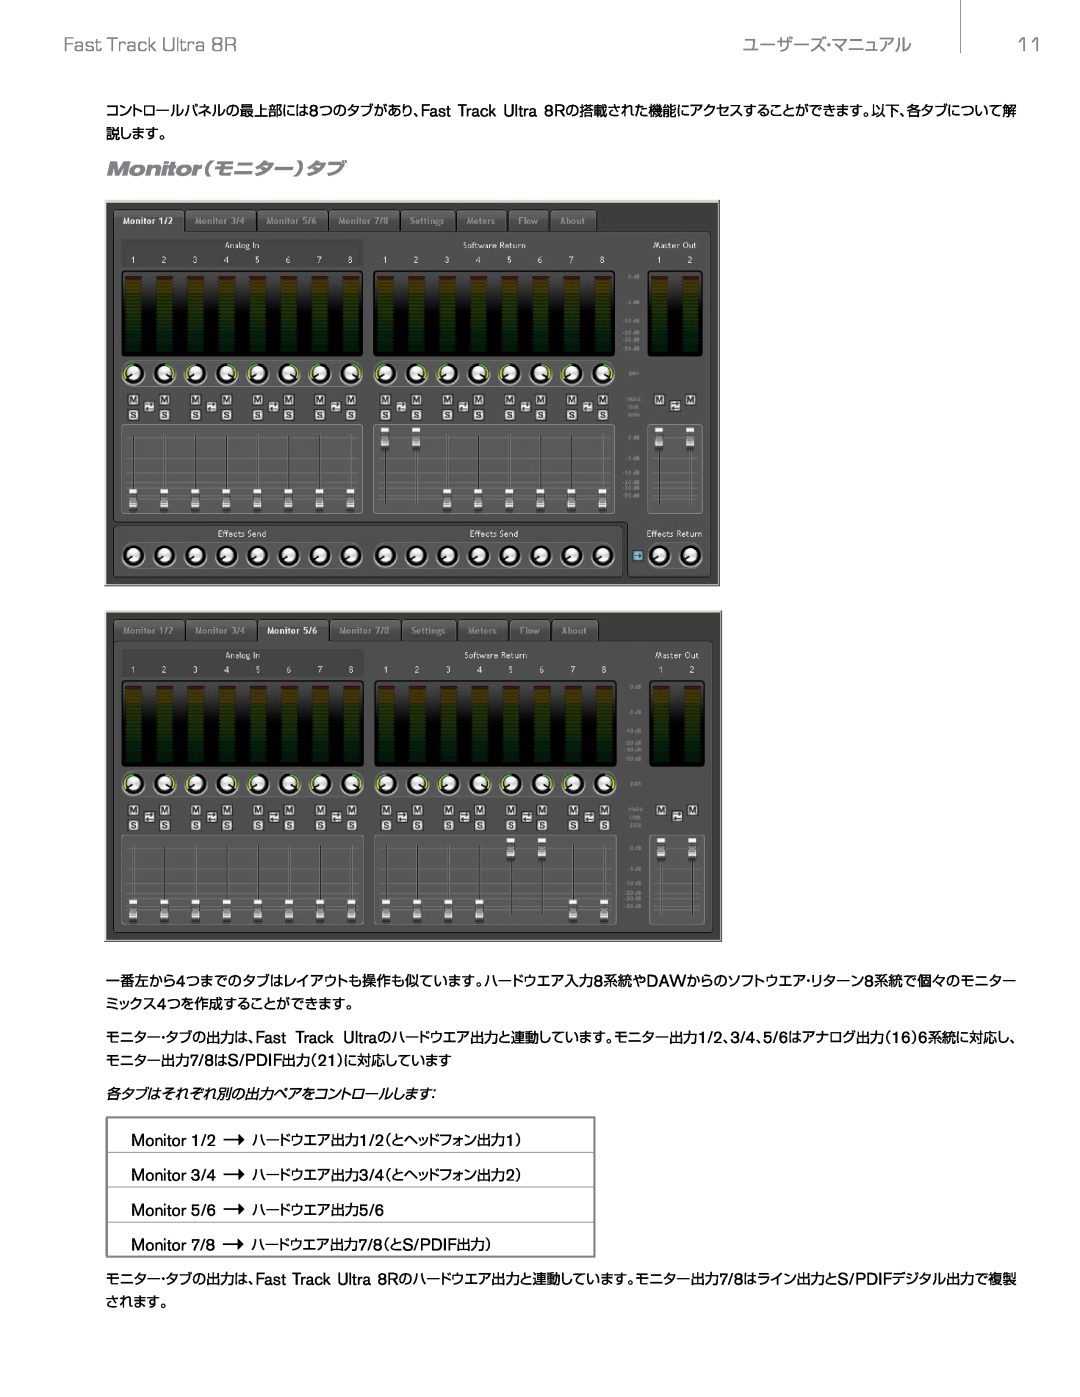 M-Audio Ultra 8R Monitor（モニター）タブ, Monitor 1/2 →ハードウエア出力1/2（とヘッドフォン出力1）, Monitor 7/8 →ハードウエア出力7/8（とS/PDIF出力）, ユーザーズ・マニュアル 